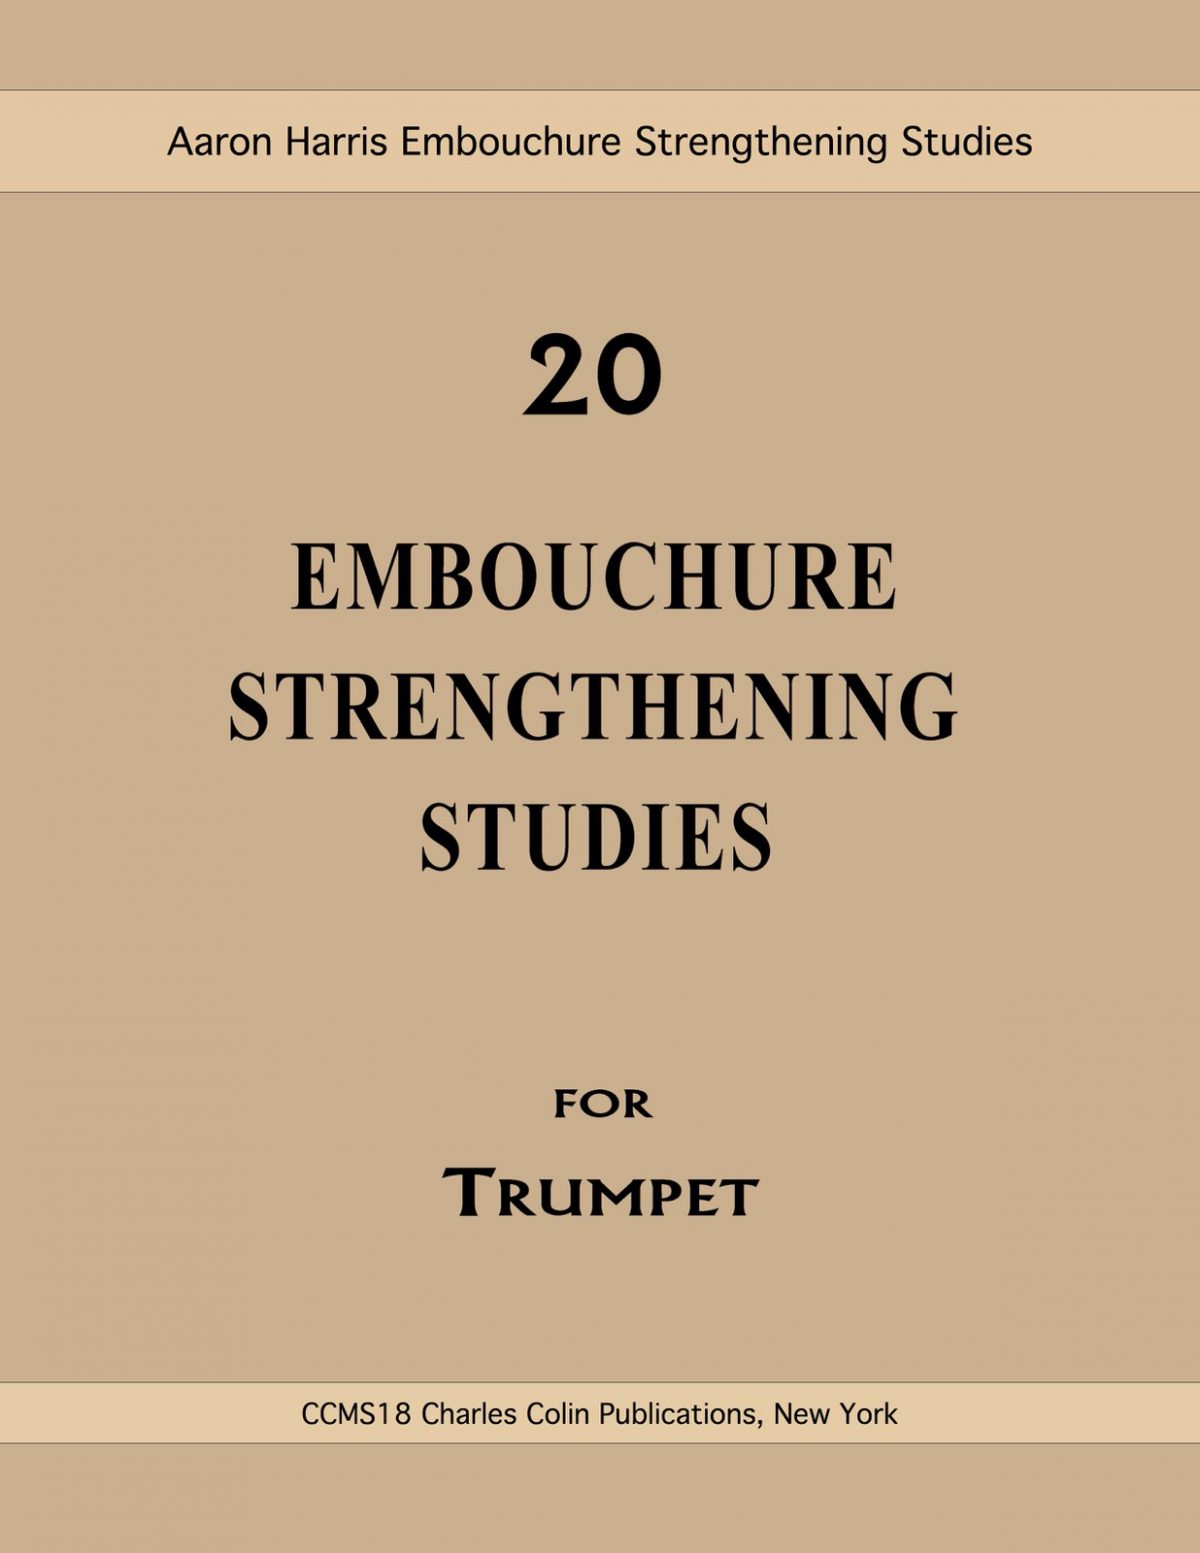 Harris, Embouchure Strengthening Studies copy-p01